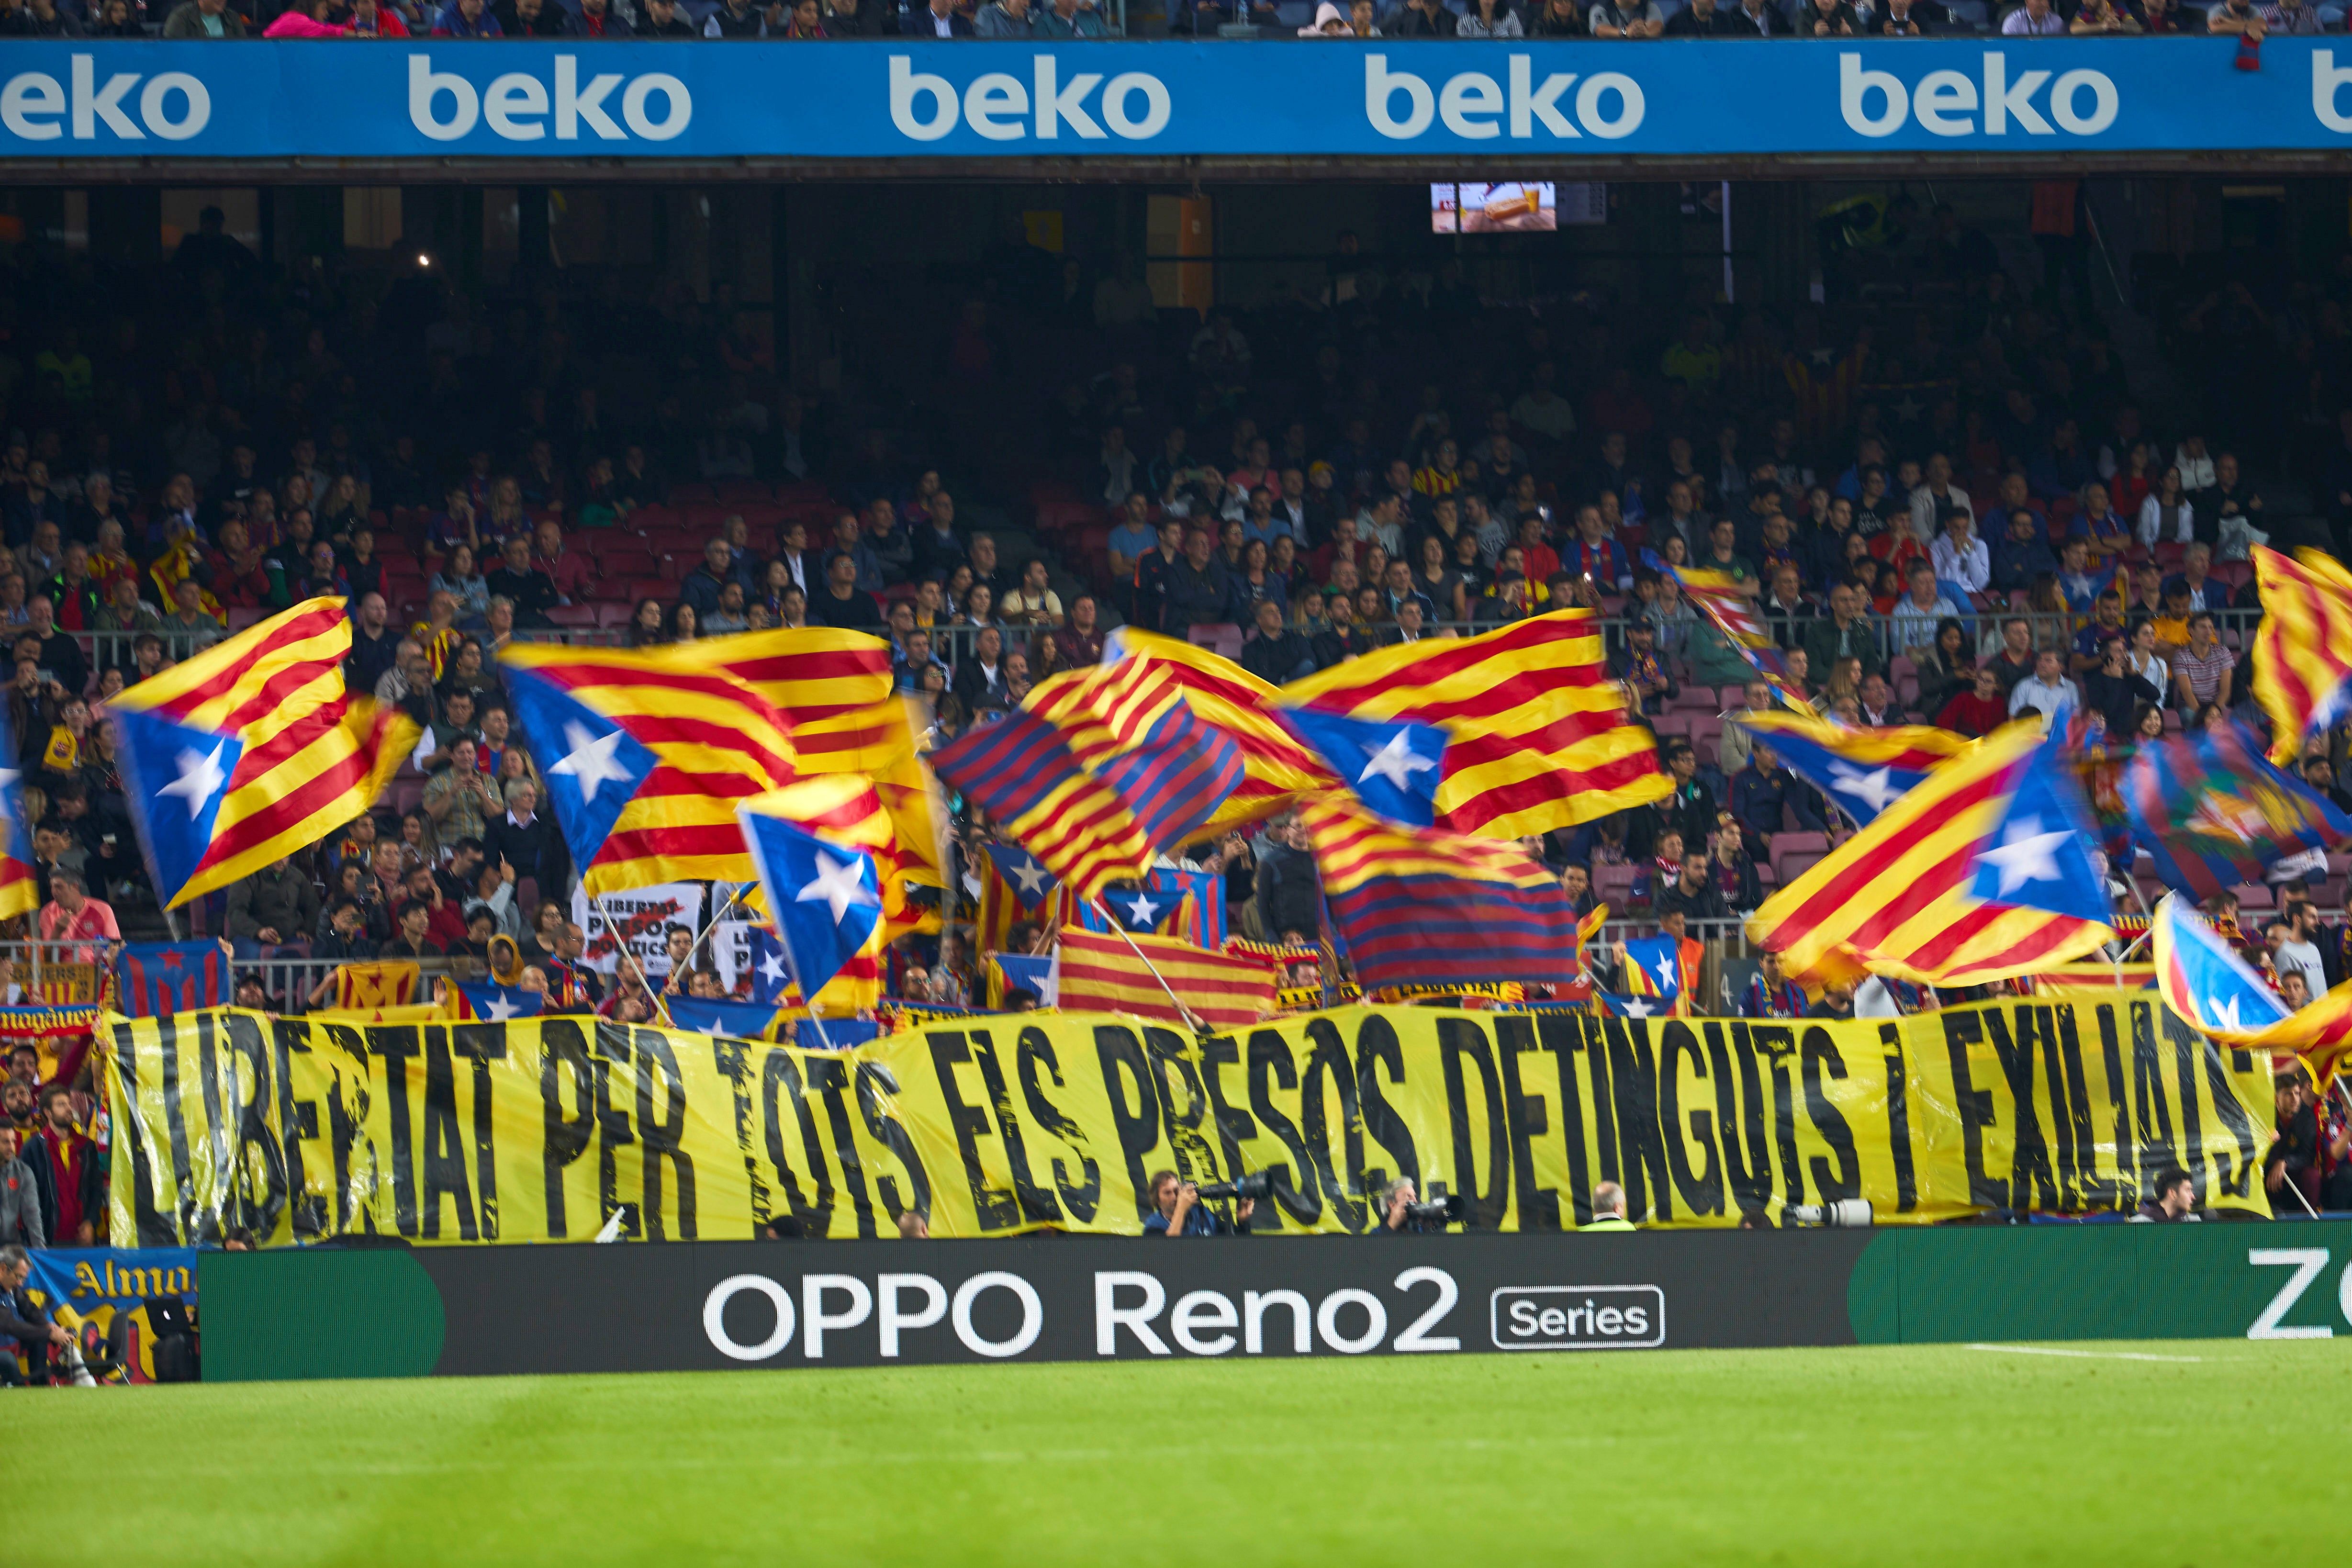 Aficionats del Barça denuncien que els han requisat pancartes